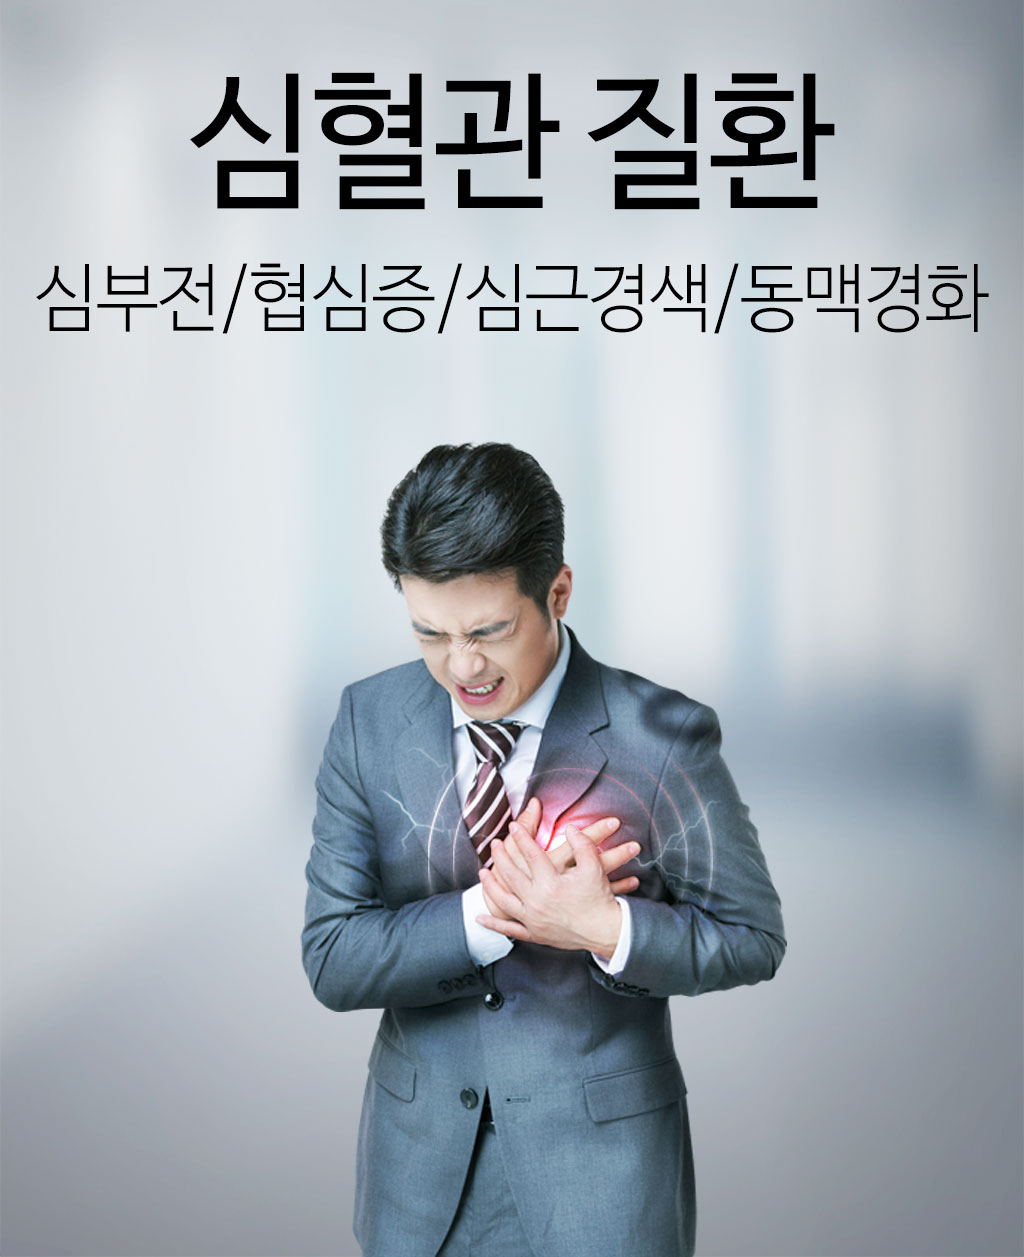 한국한의원, 한국한의원 심혈관 클리닉, 심부전, 협심증, 심근경색, 동맥경화